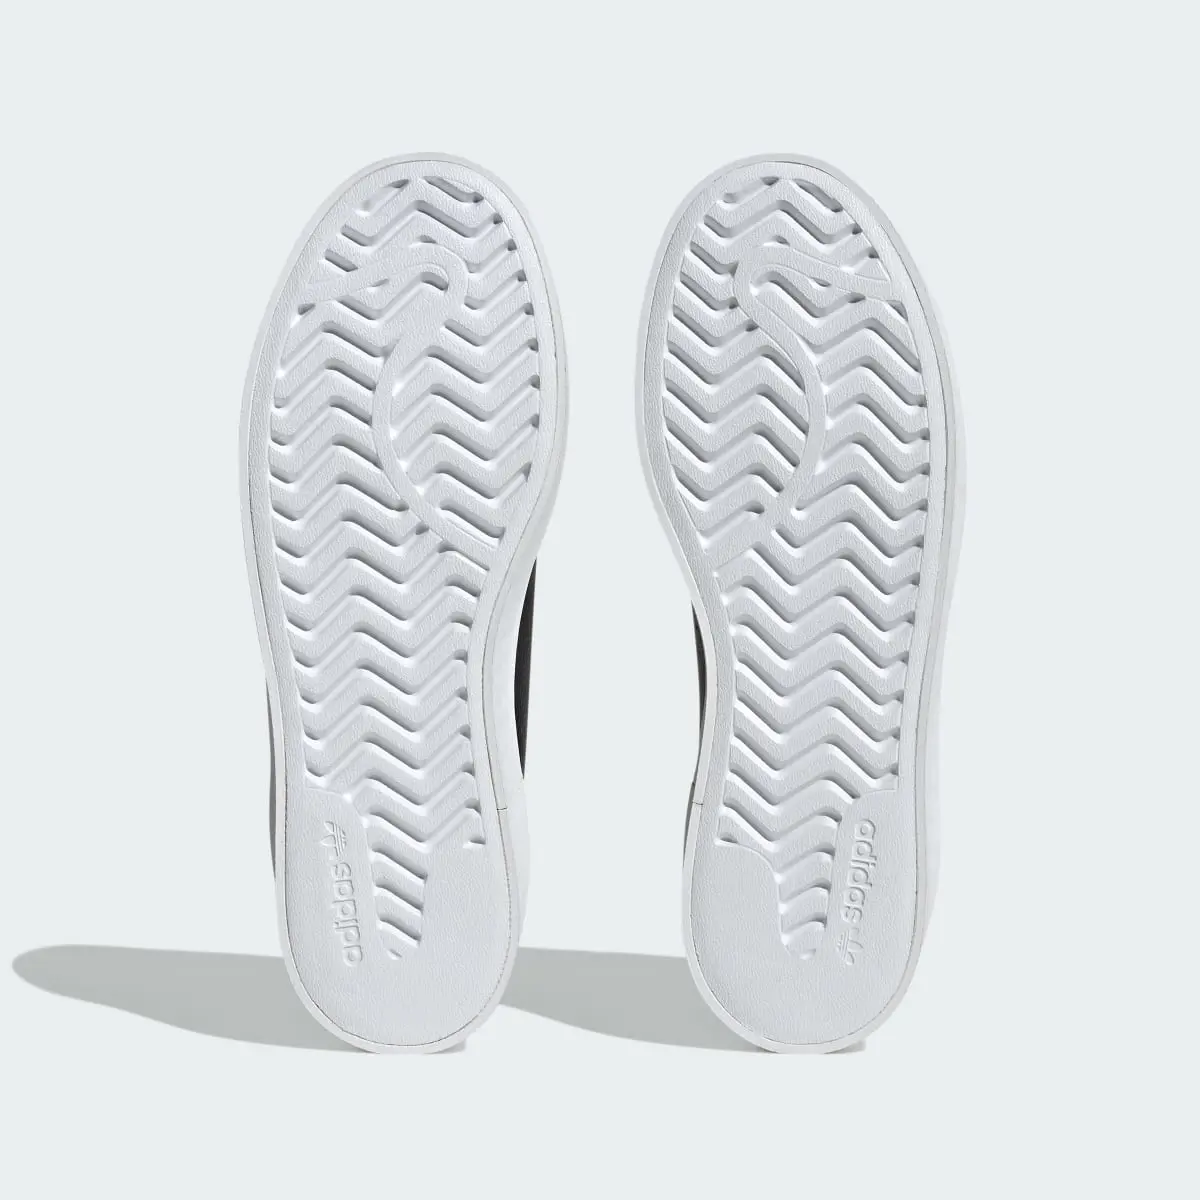 Adidas Stan Smith Bonega Ayakkabı. 3